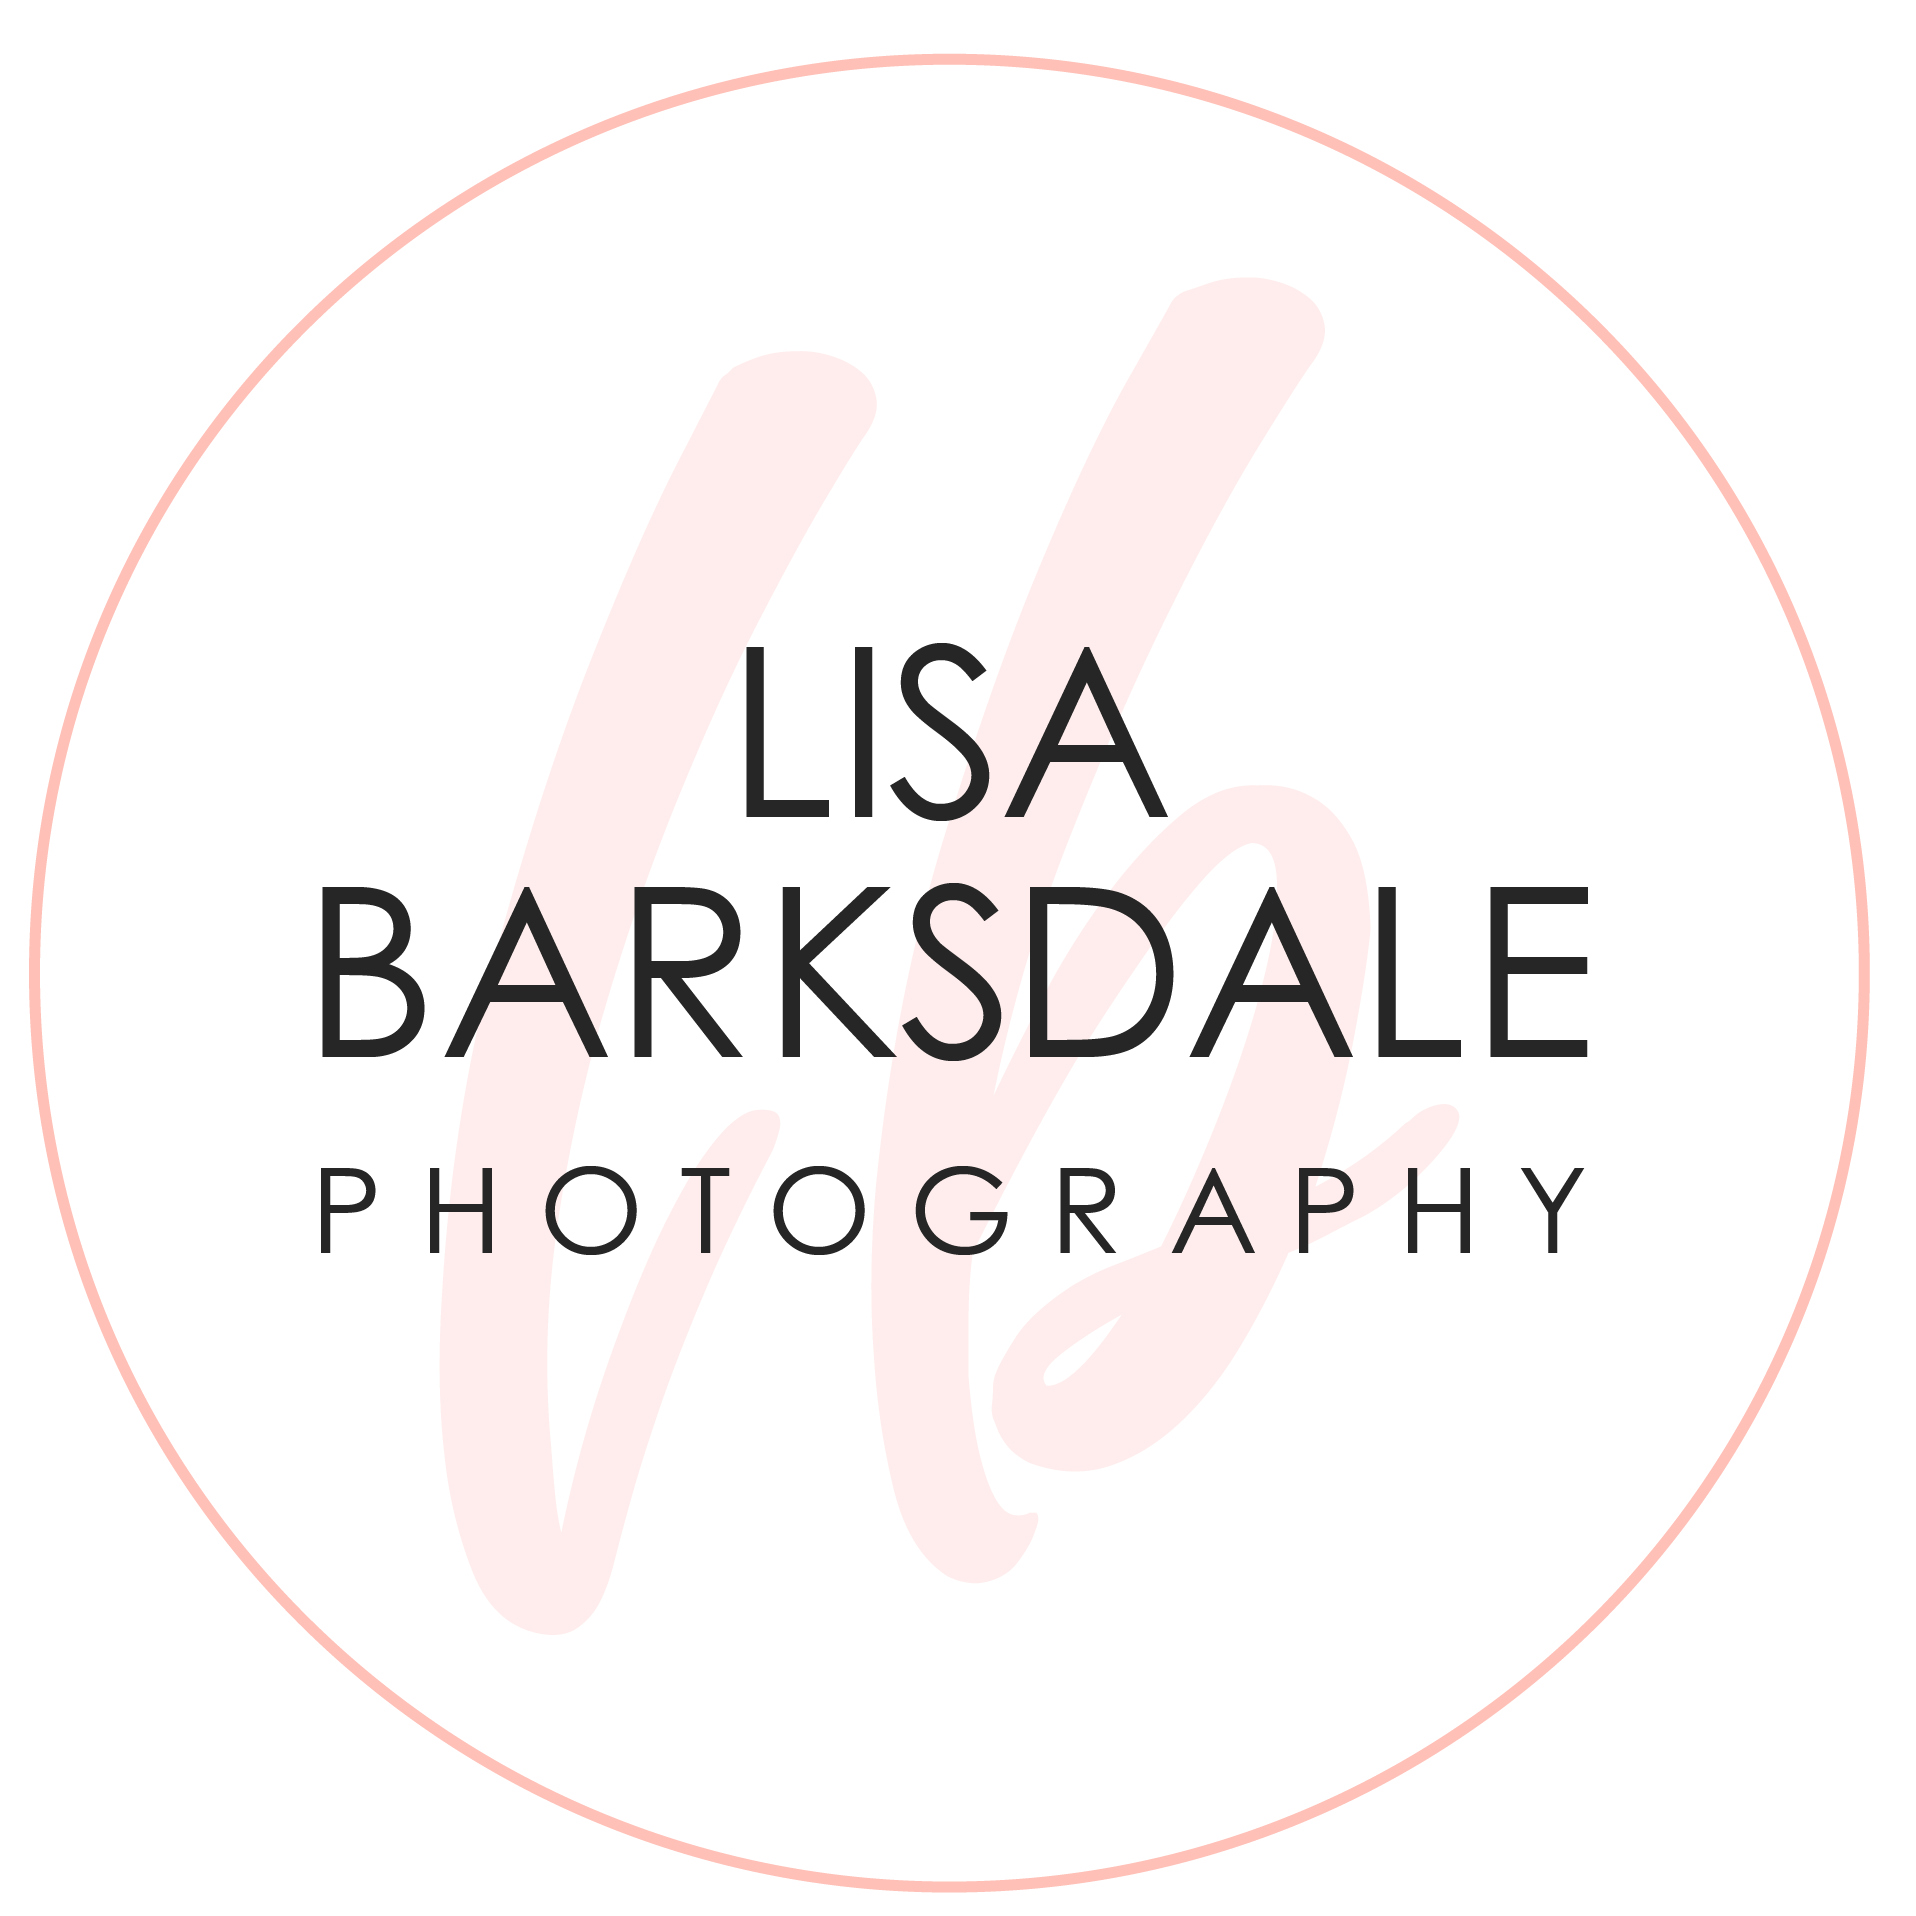 Lisa Barksdale